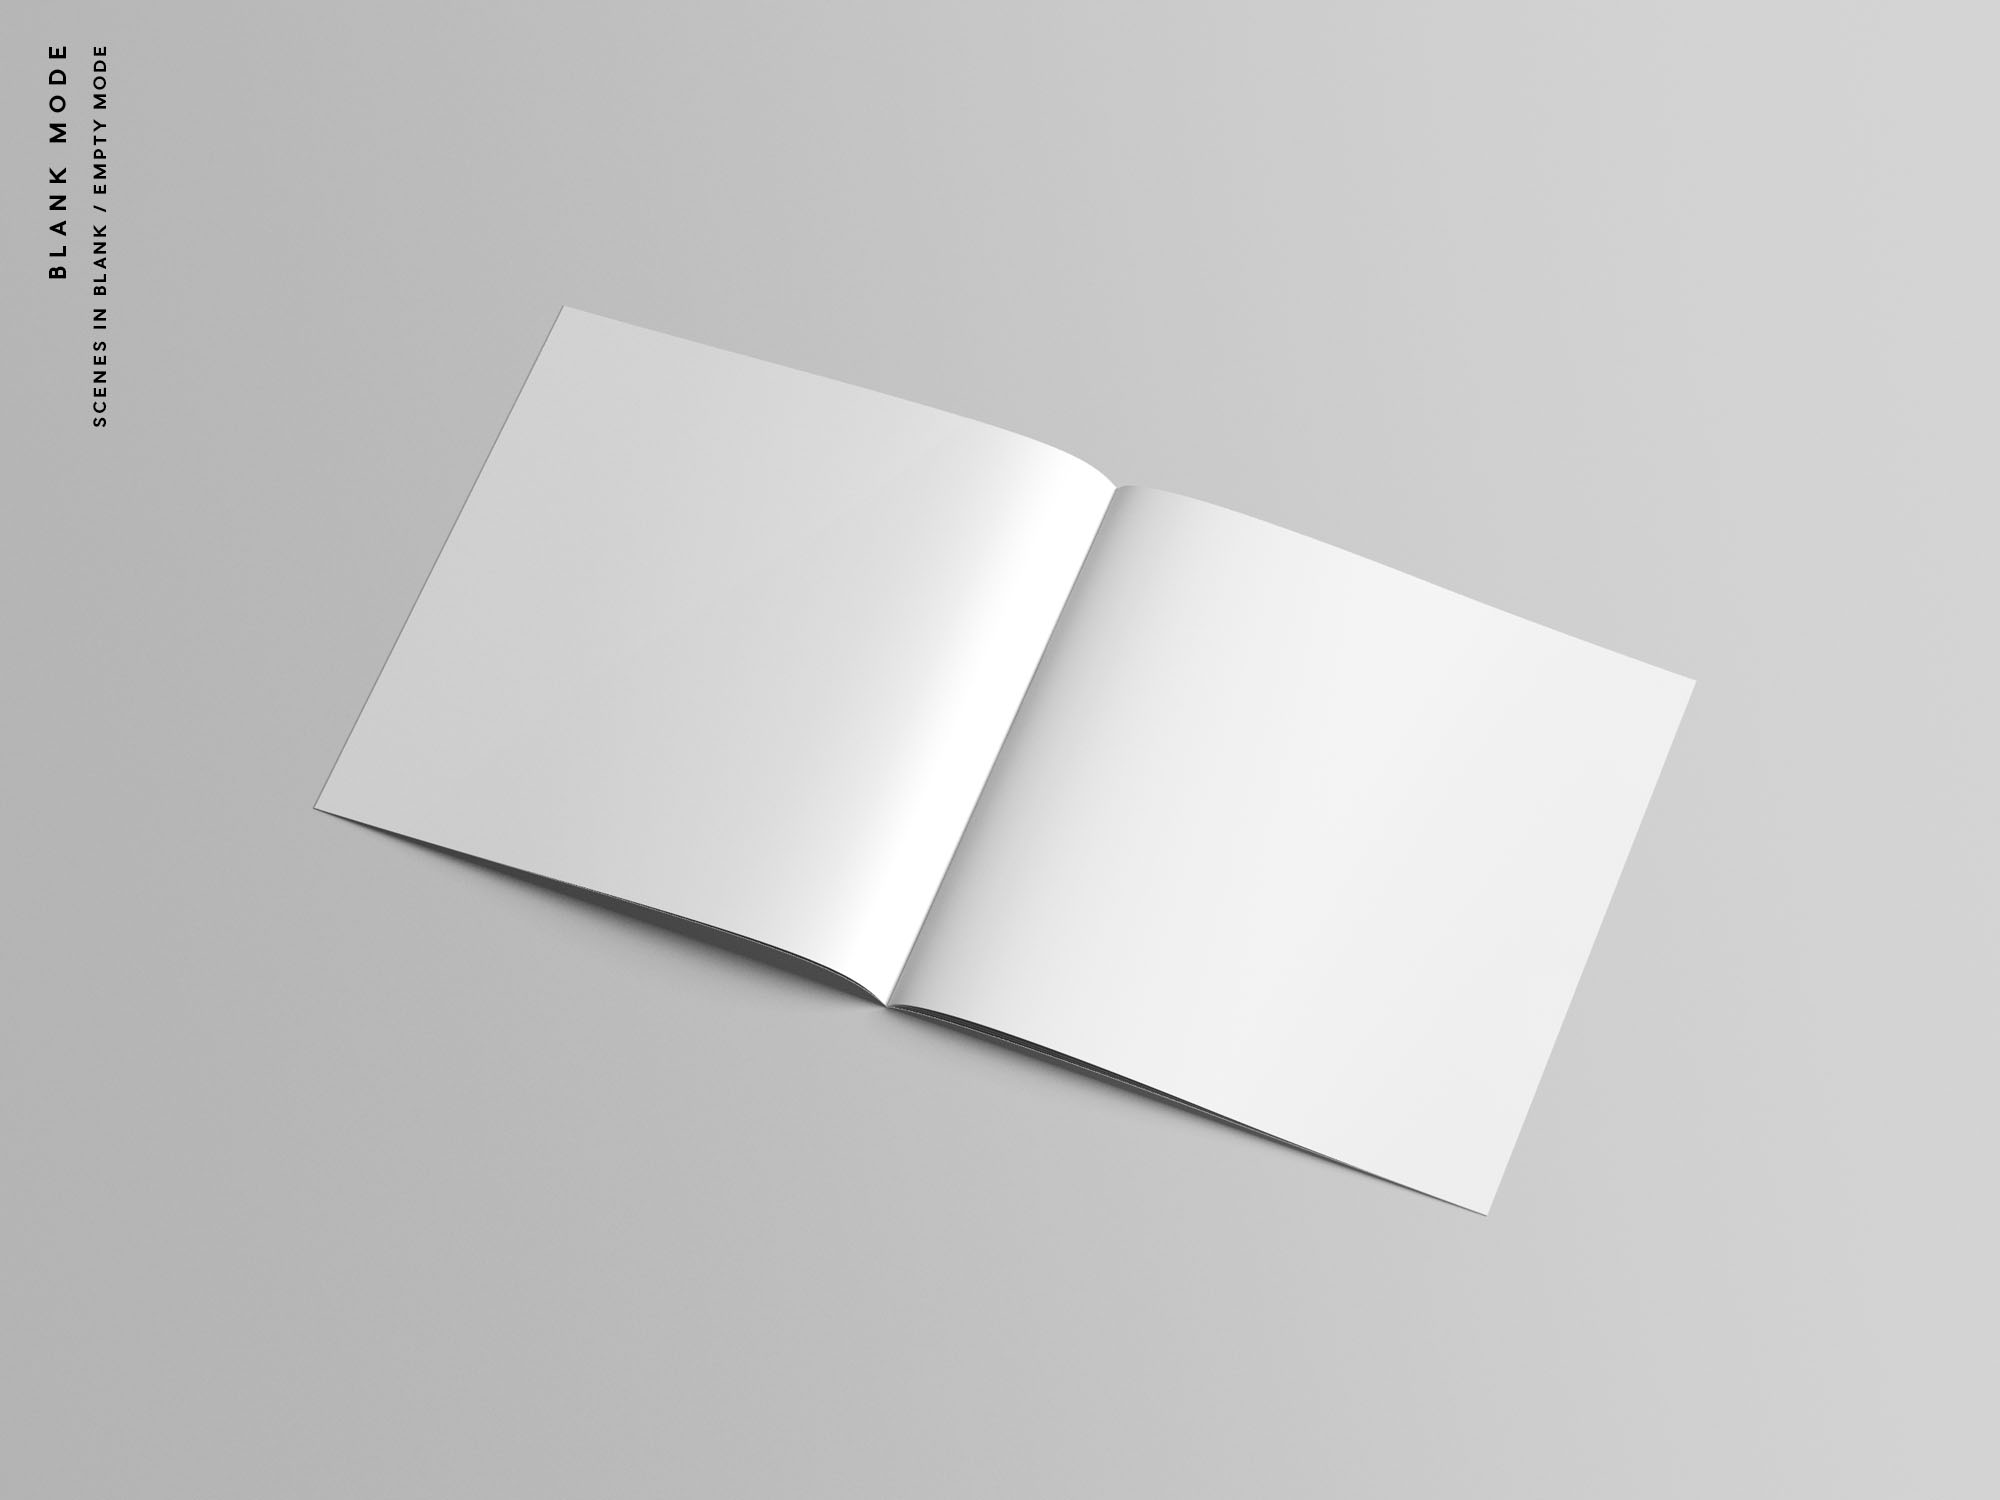 9个高质量方形小册子宣传册杂志画册设计贴图样机模板 Squa